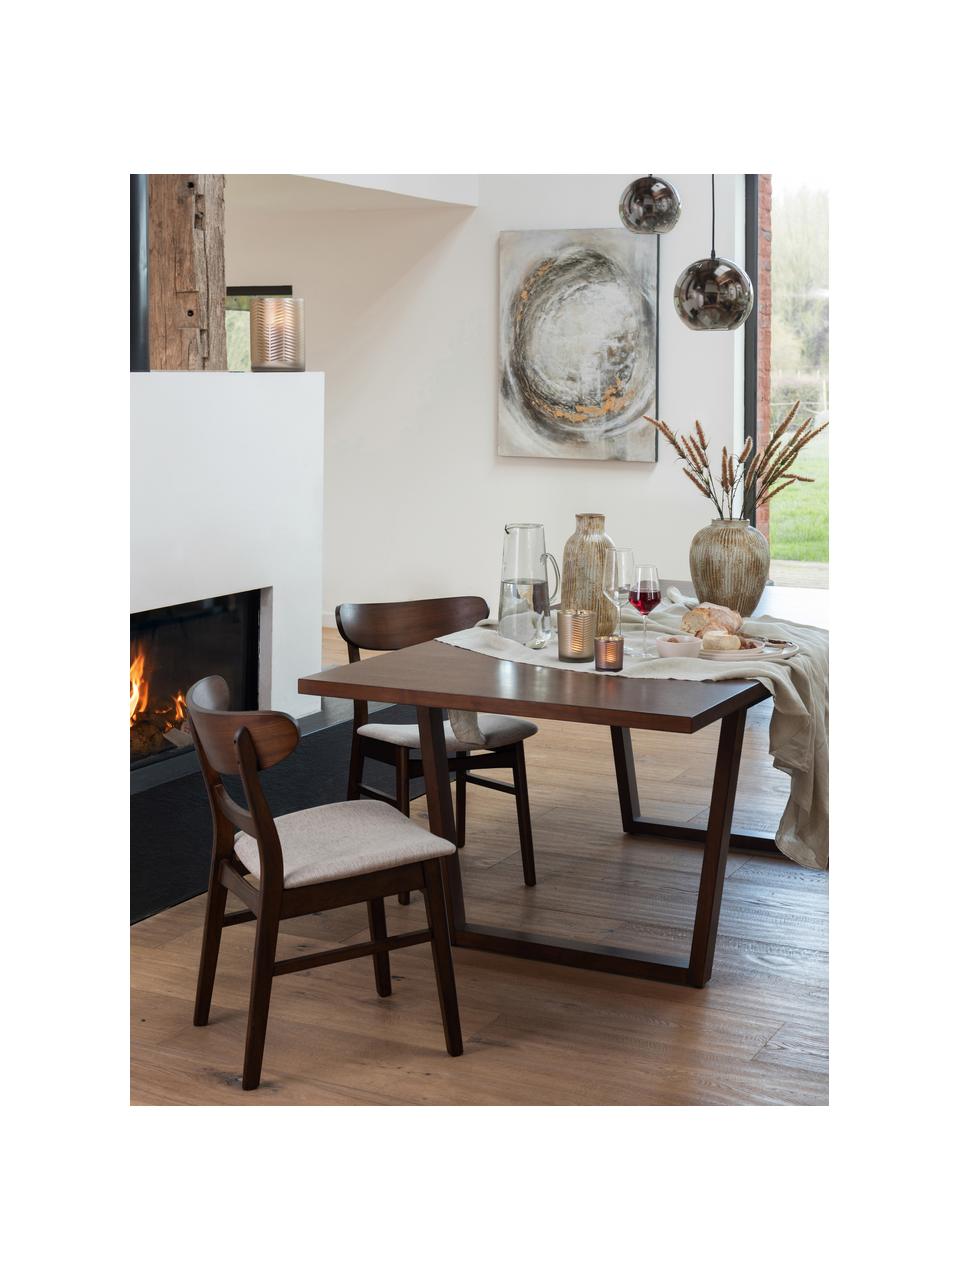 Krzesło z drewna z tapicerowanym siedziskiem Ken, Tapicerka: poliester, Stelaż: drewno kauczukowe, Brązowy, beżowy, S 57 x G 53 cm